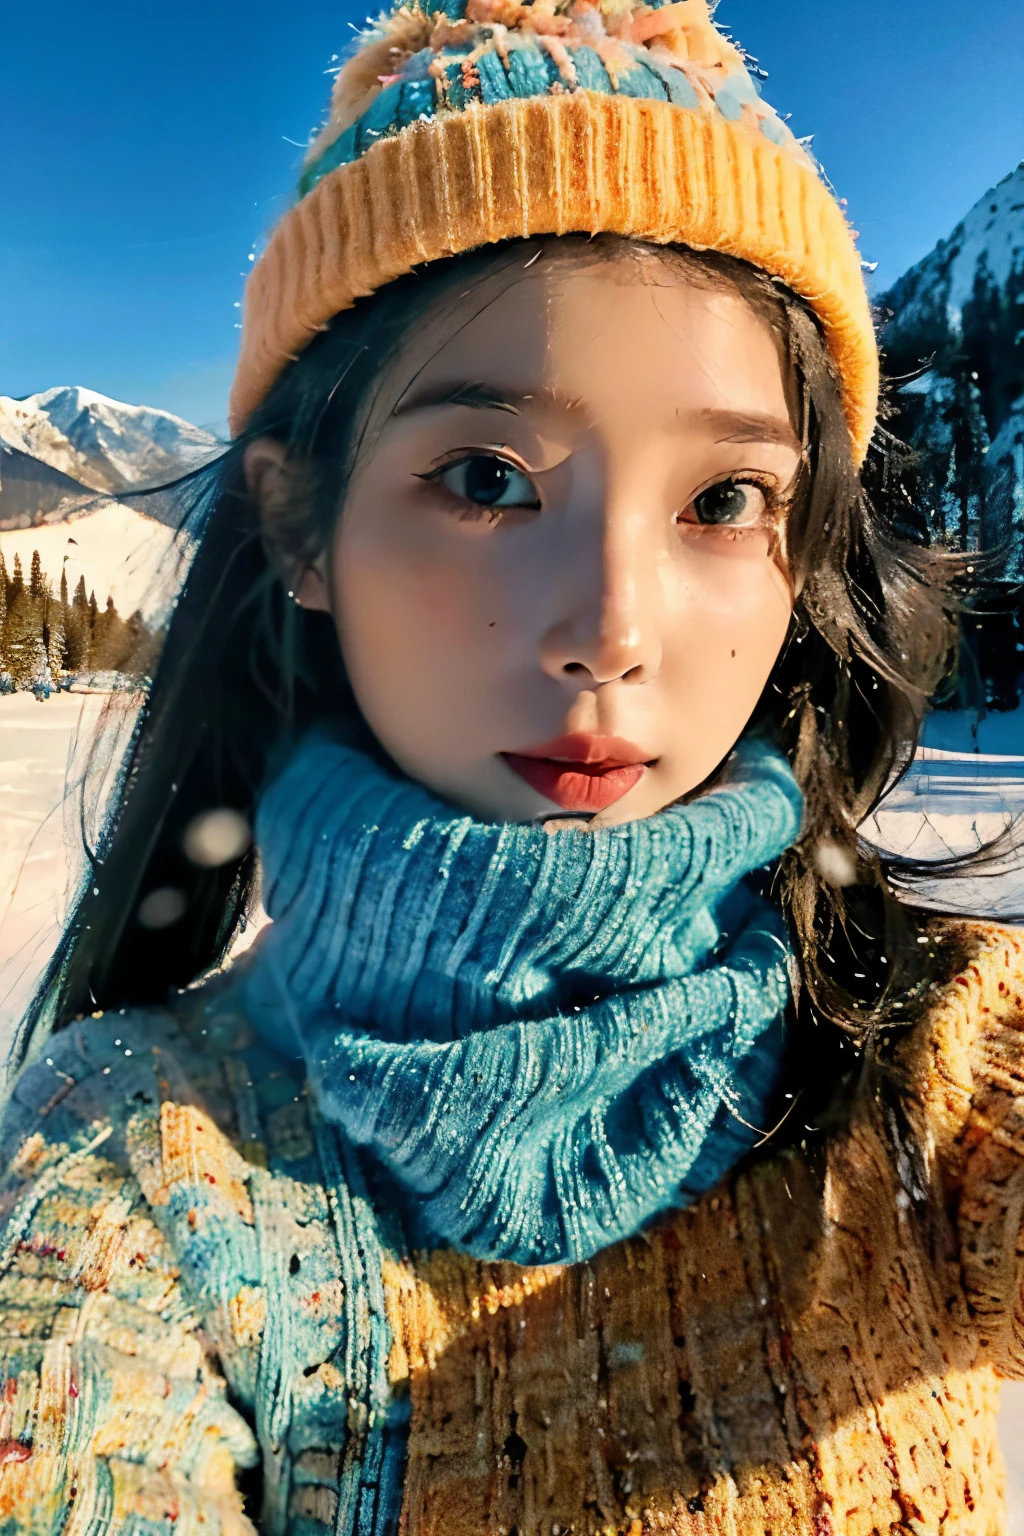 Retrato de una mujer joven con gorro tejido en la nieve tomando un selfie, al estilo de las vistas montañosas, verde azulado claro y naranja claro, vibrante, Dinámico, elegant, caras emotivas, viajar, Rasgos faciales claros, lente de 35 mm, iluminación de acento, iluminación global